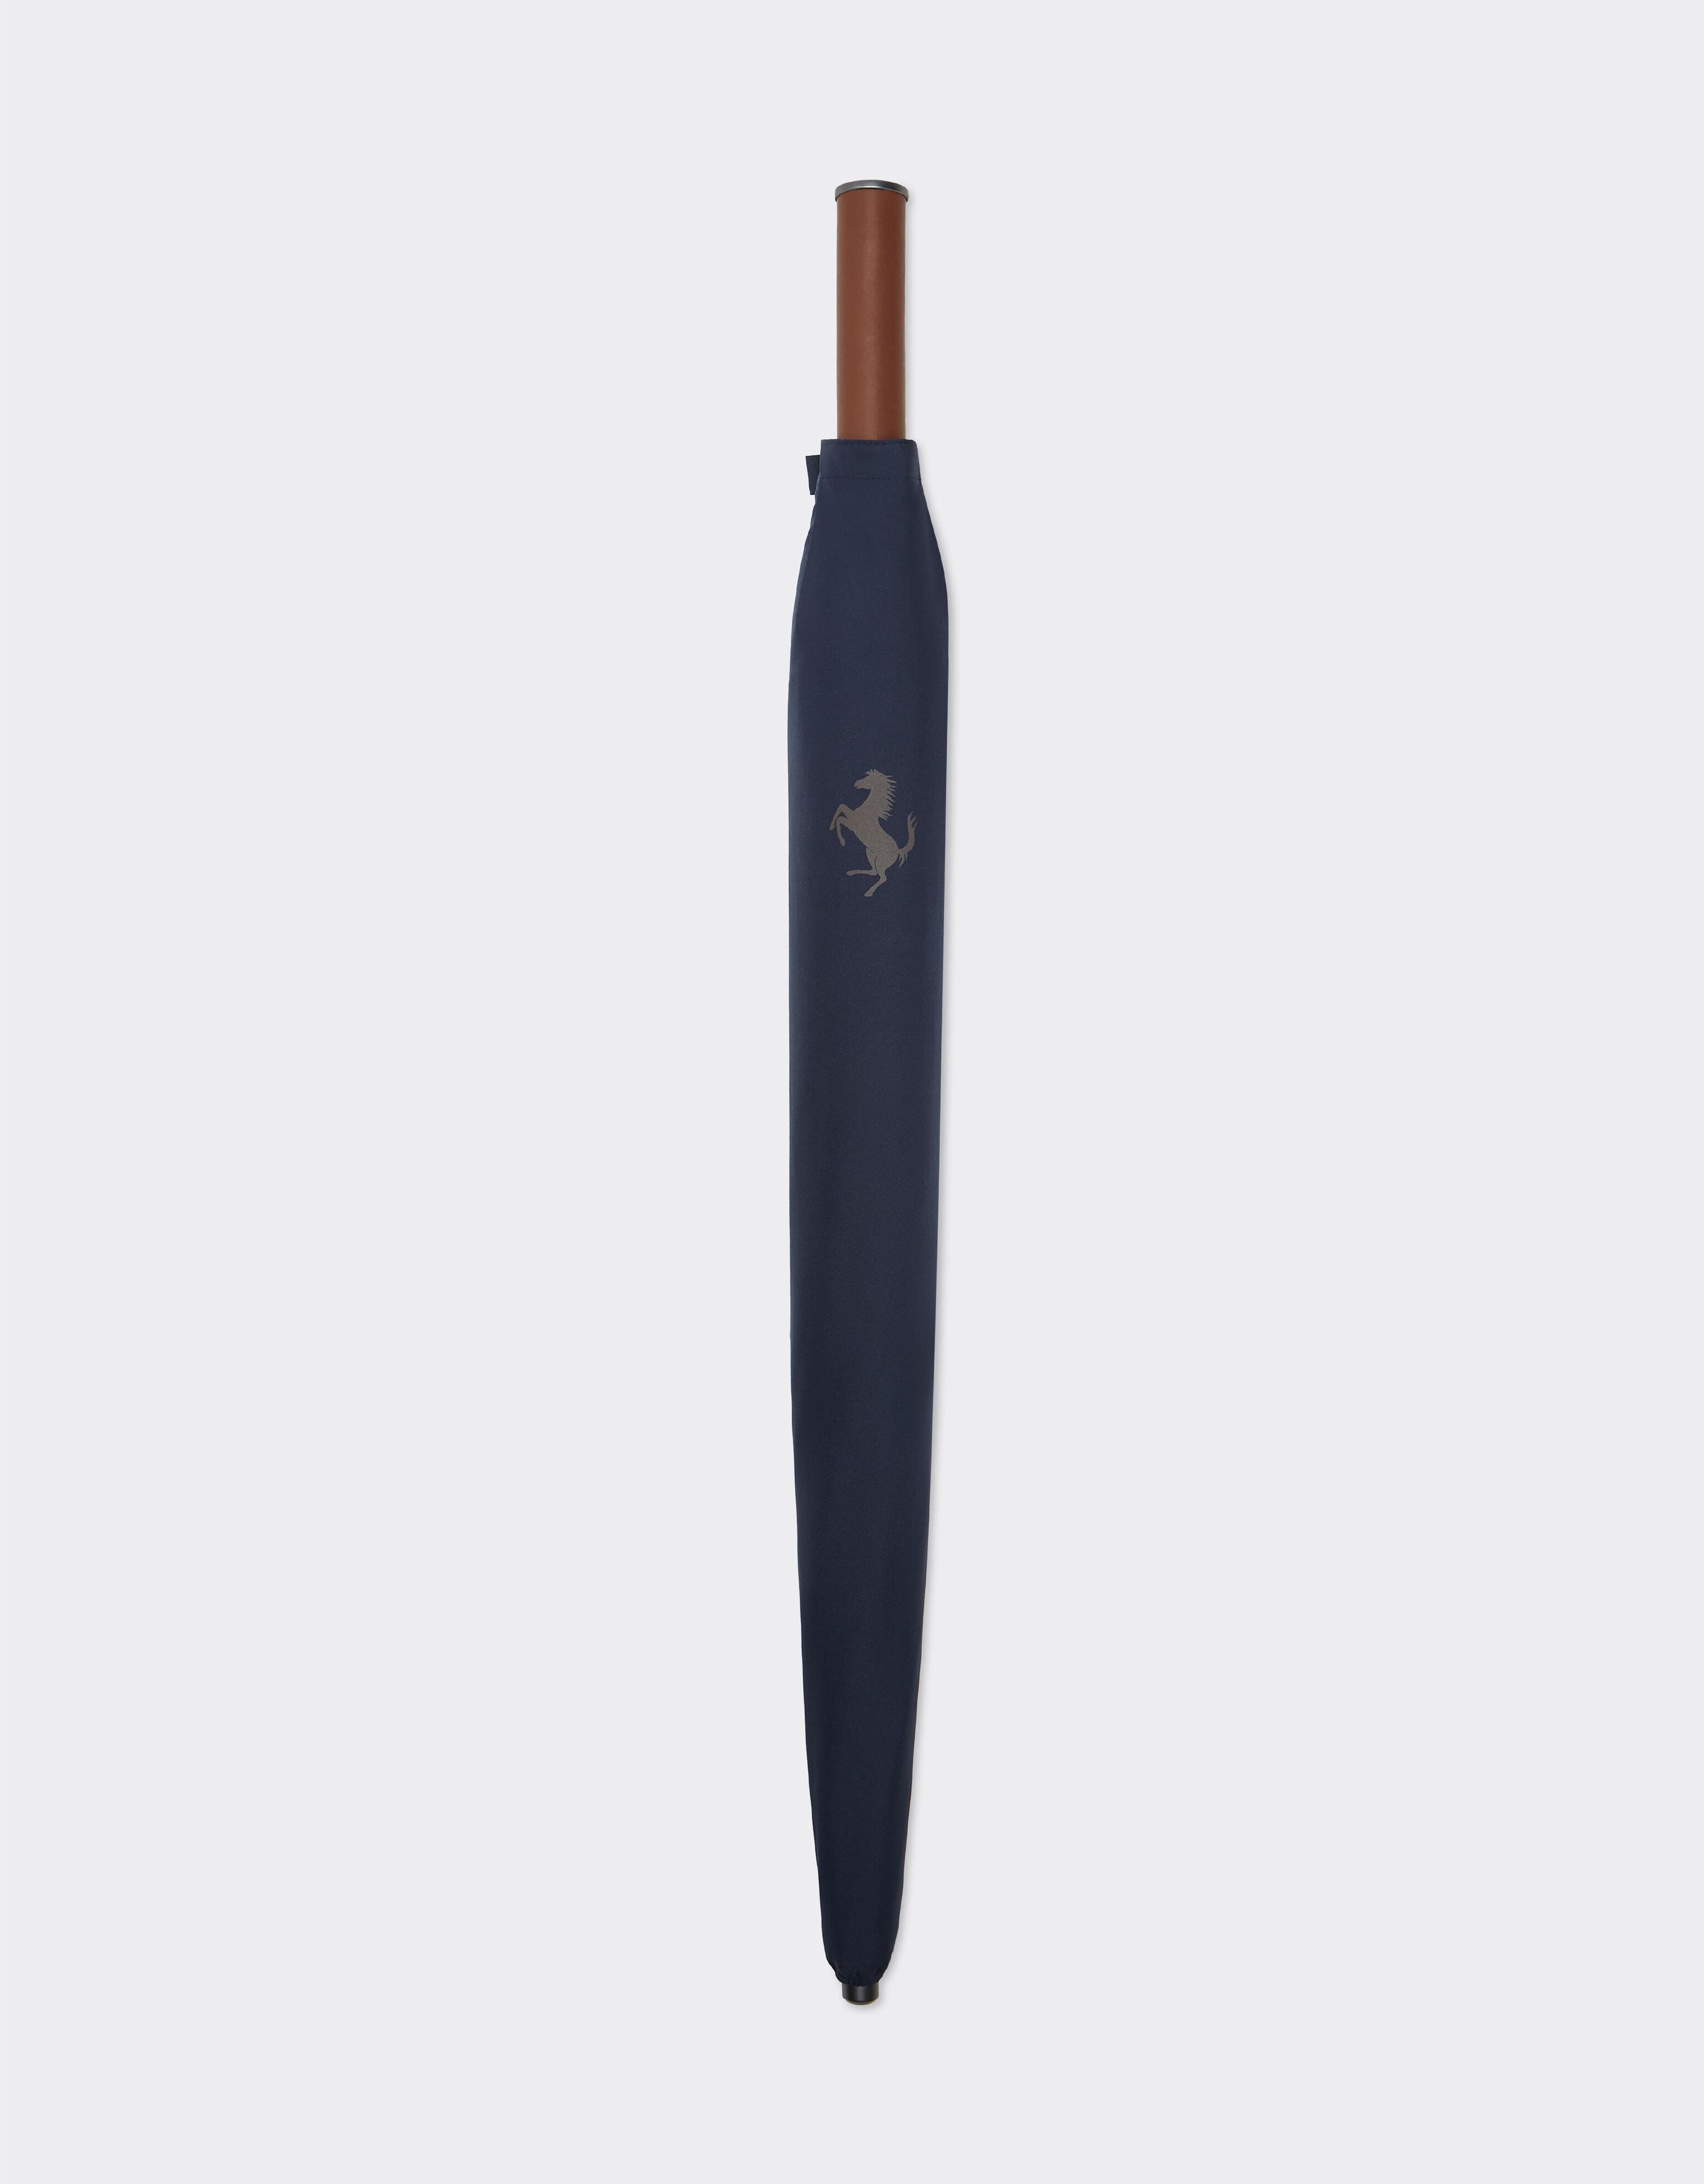 Ferrari Parapluie avec motif Cheval cabré pixélisé Bleu marine 20382f